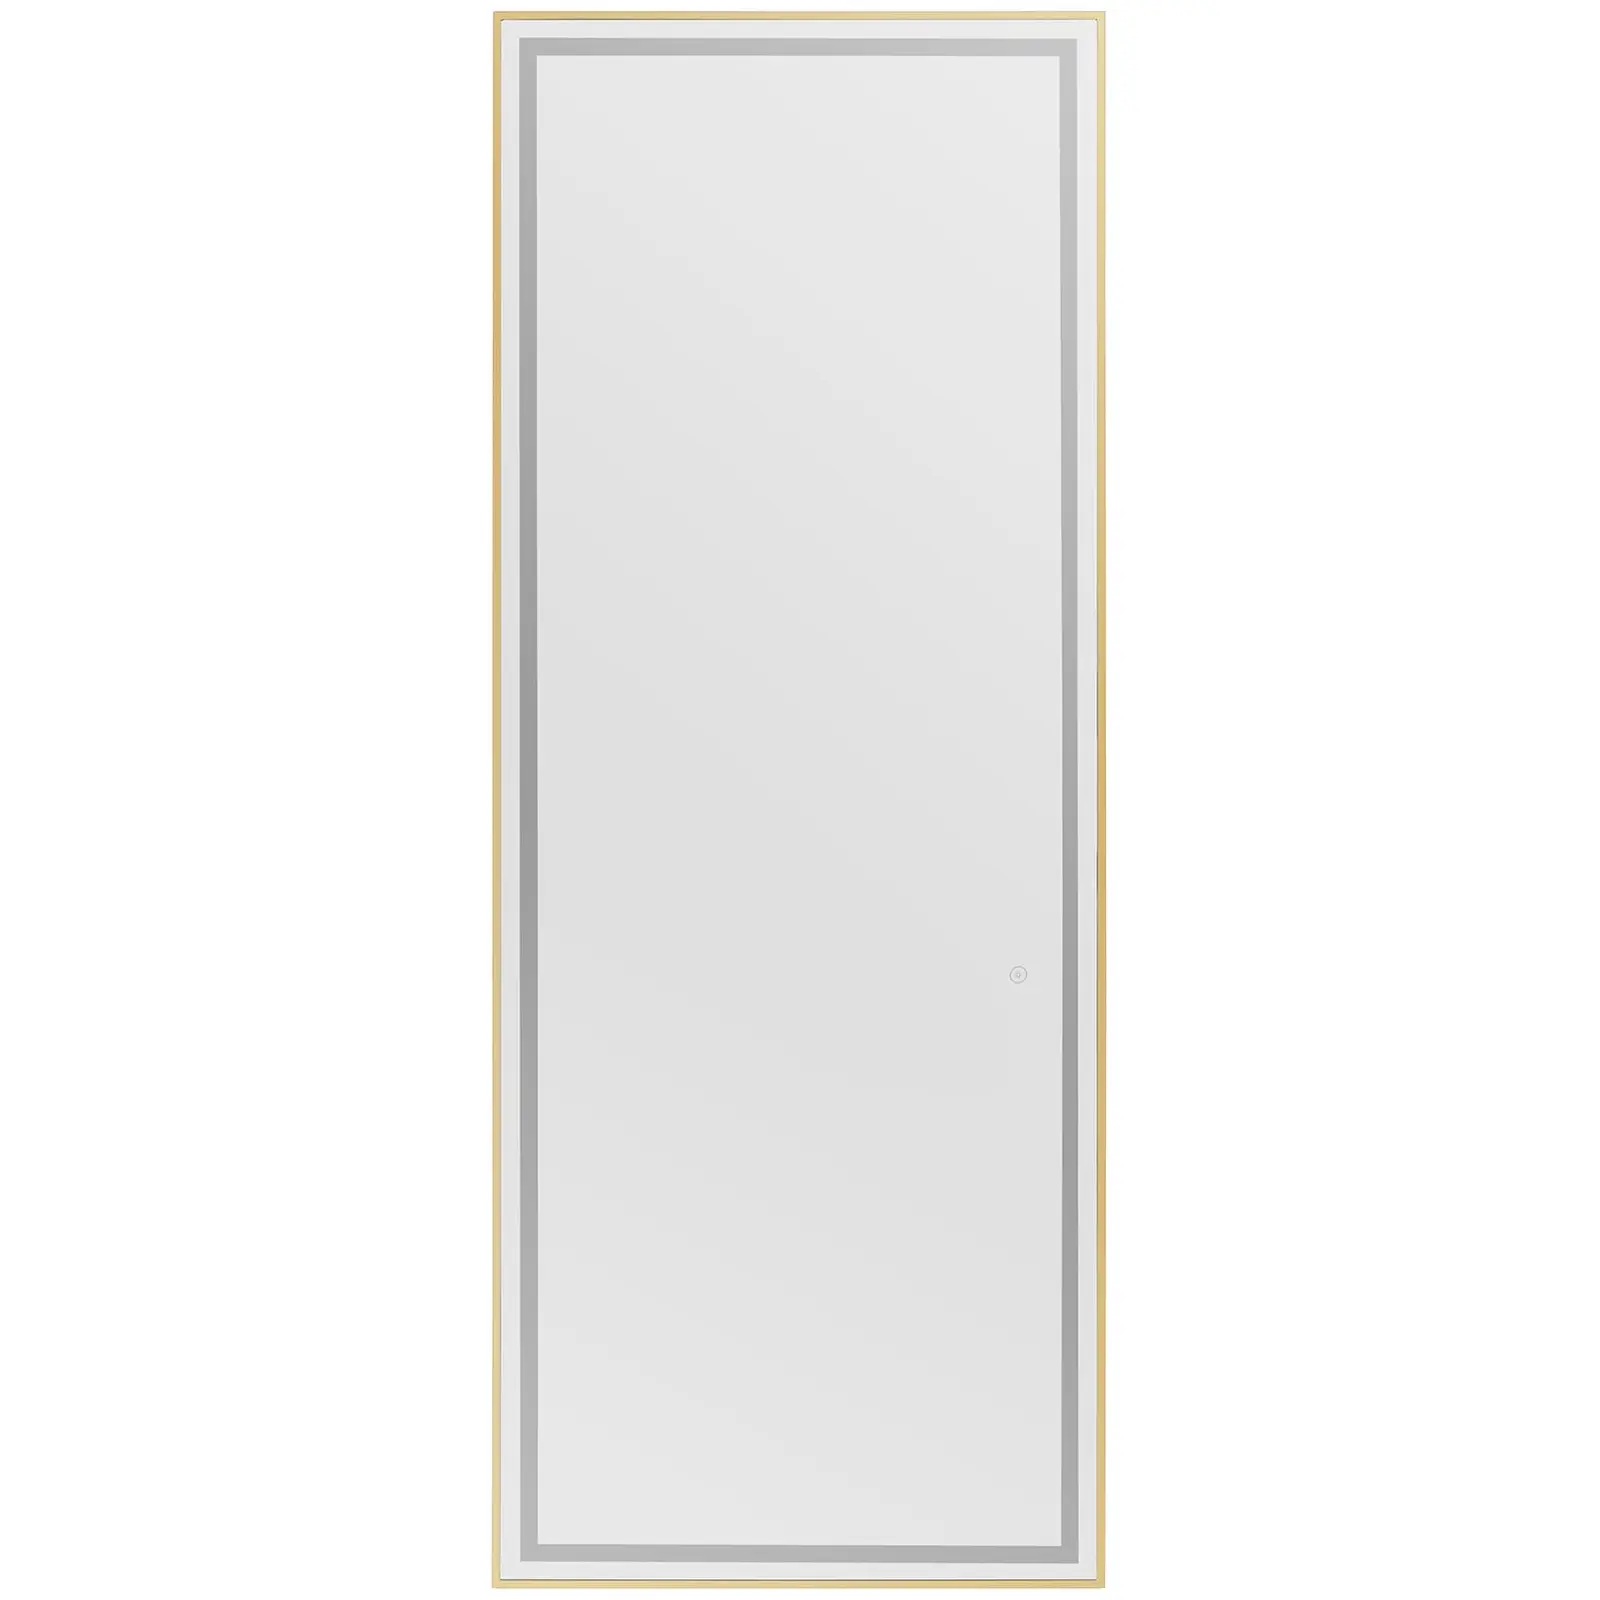 Kadeřnické zrcadlo - LED osvětlení - extra ploché - obdélníkové - 70 x 4 x 180 cm